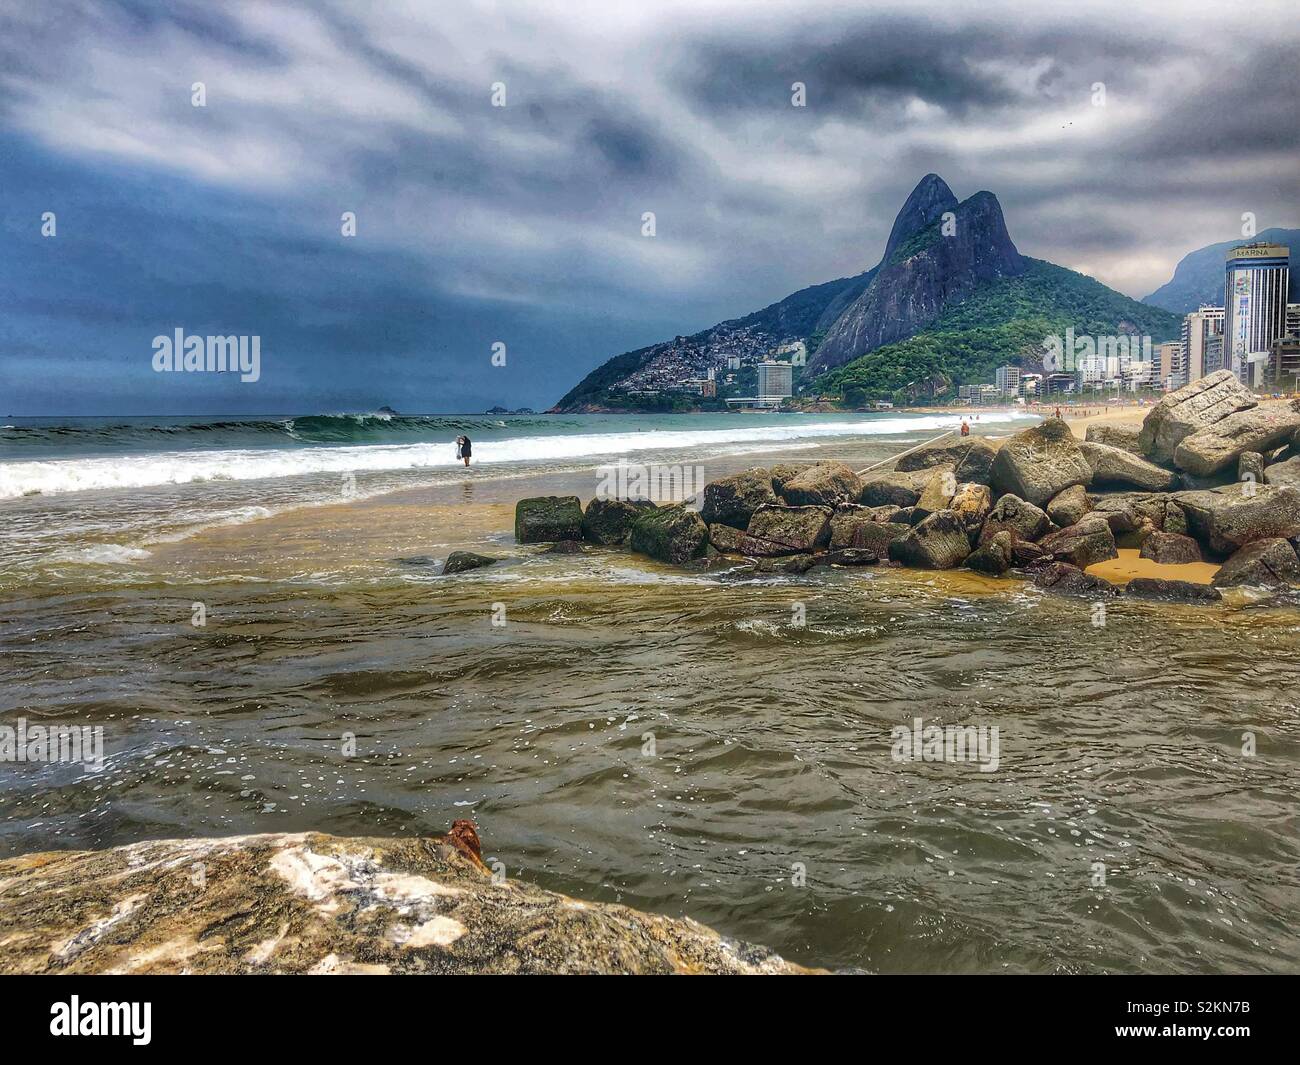 Ipanema beach in Rio de Janeiro, Brazil. Stock Photo